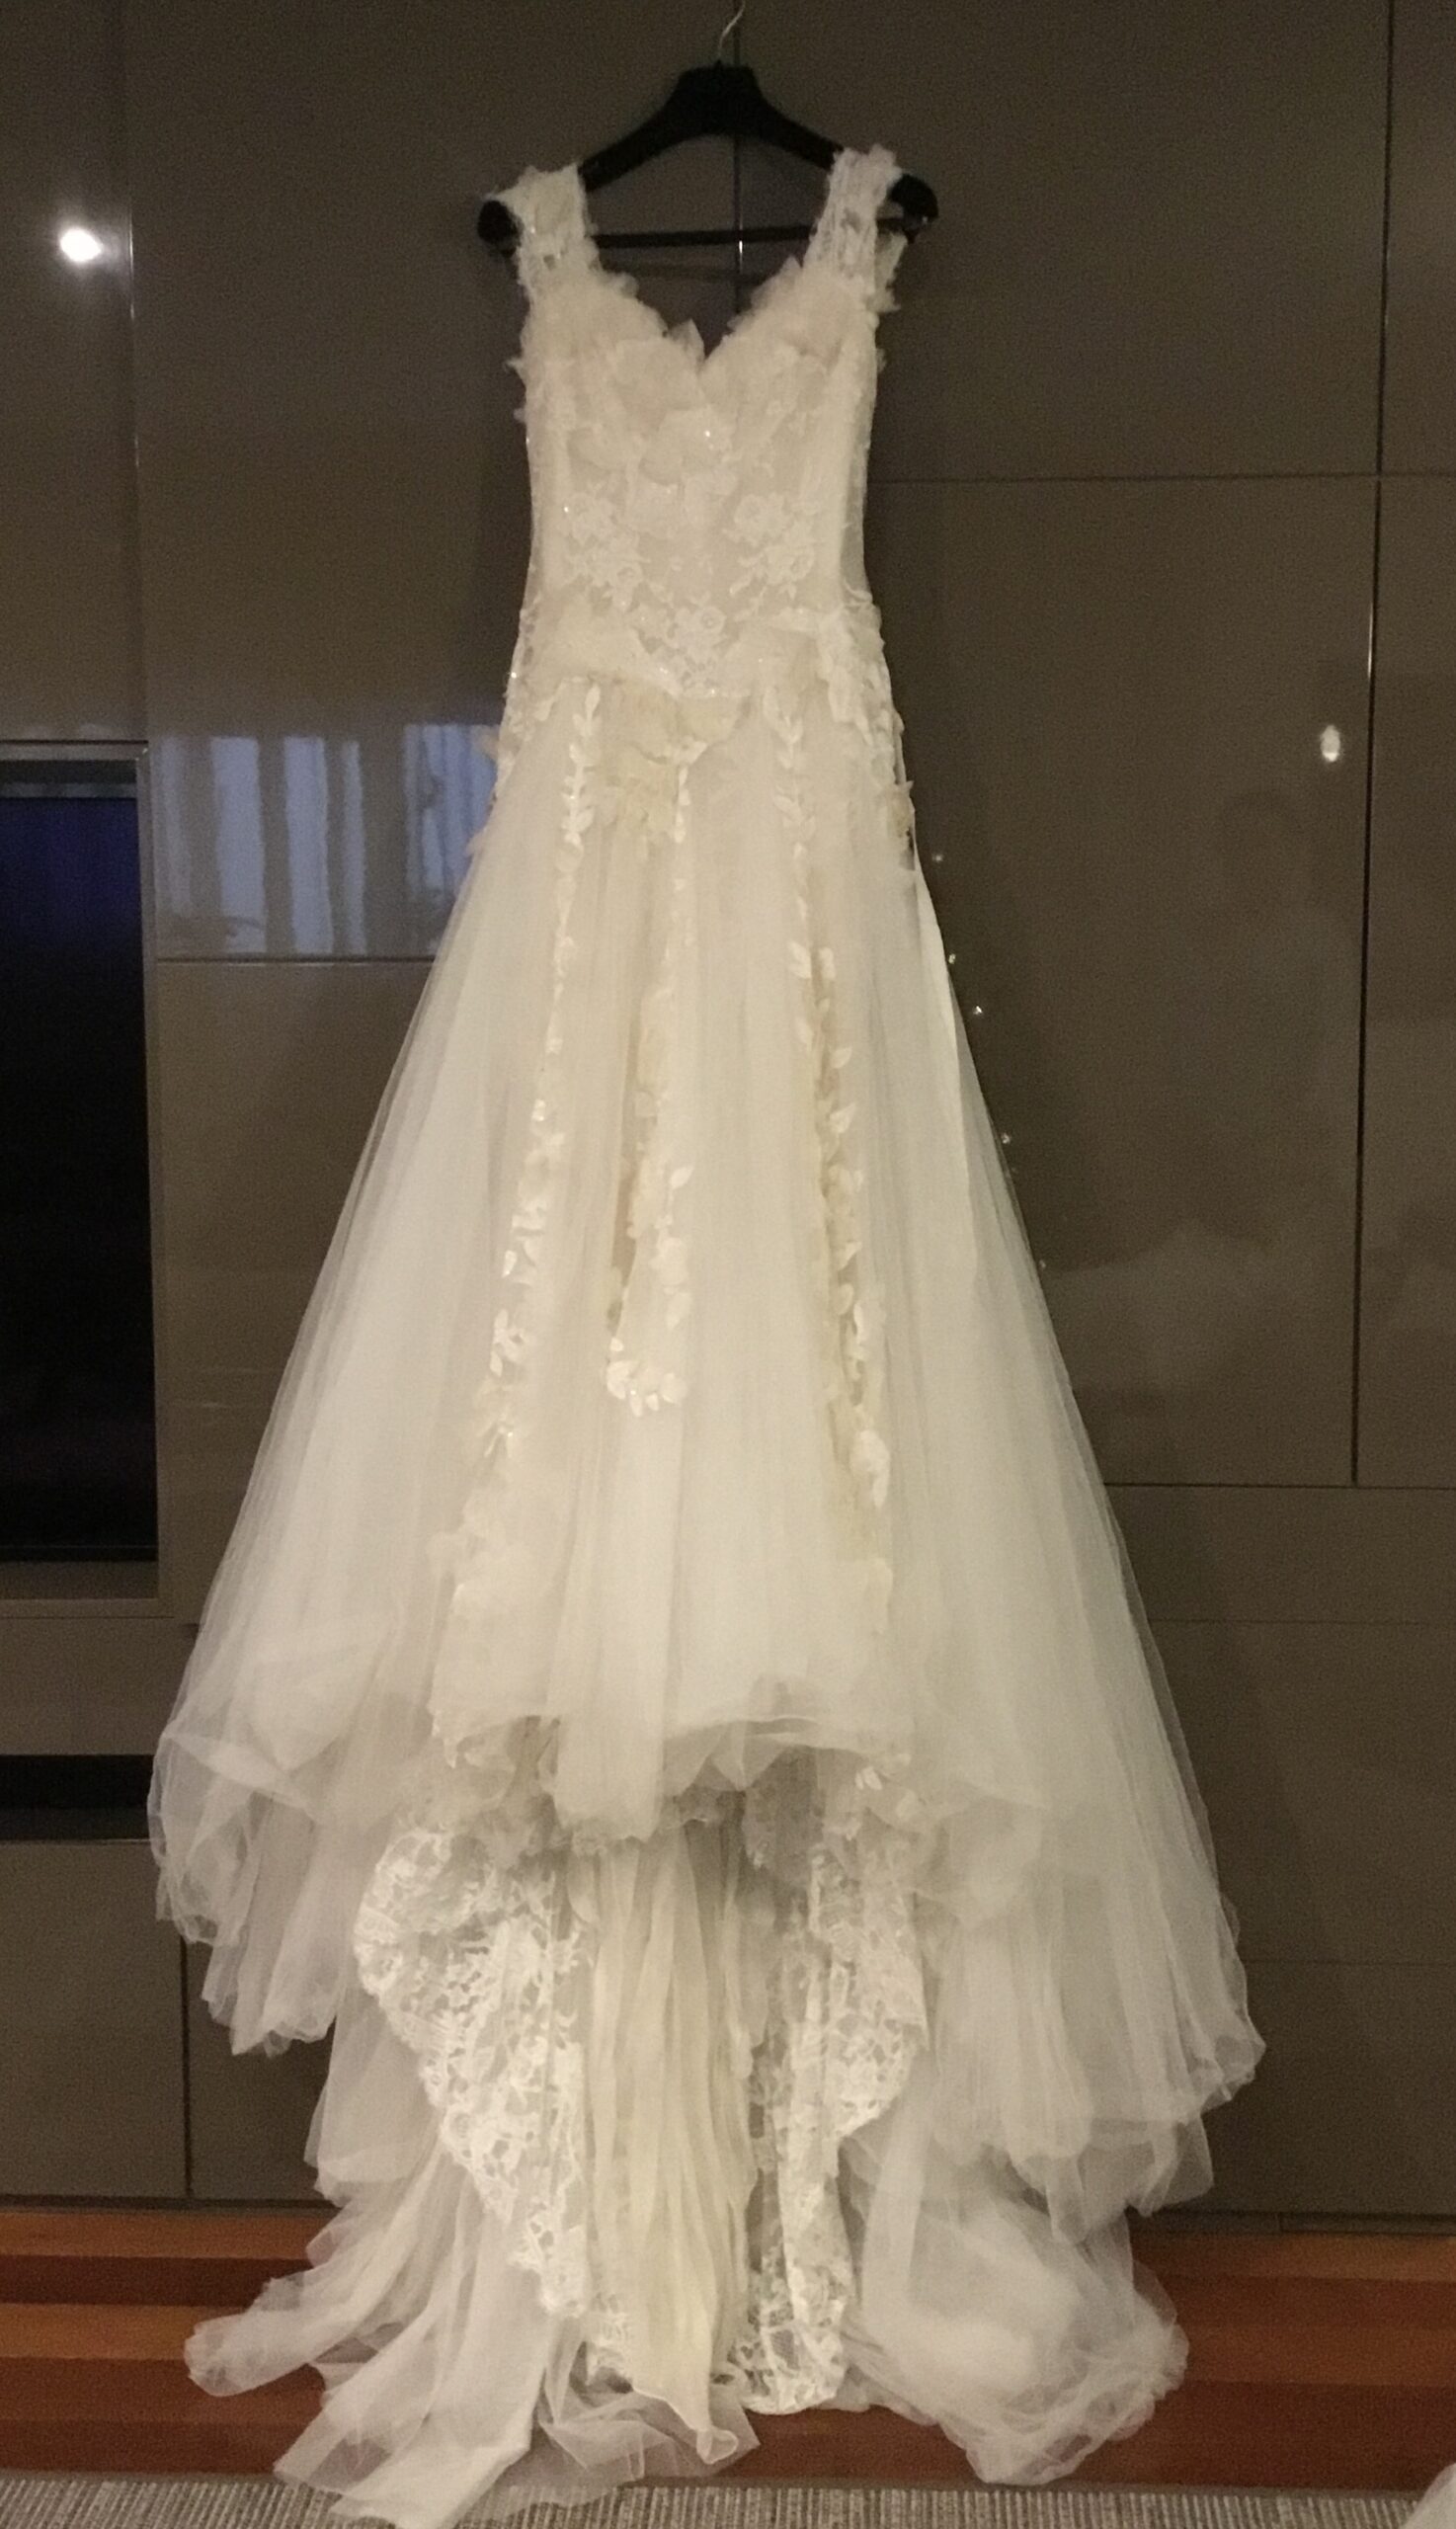 Vestido de noiva Elie Saab Aglaya Wedding Dress. Vestido de Noiva coleção Pronovias- modelo Aglaya Elie Saab 2011 10